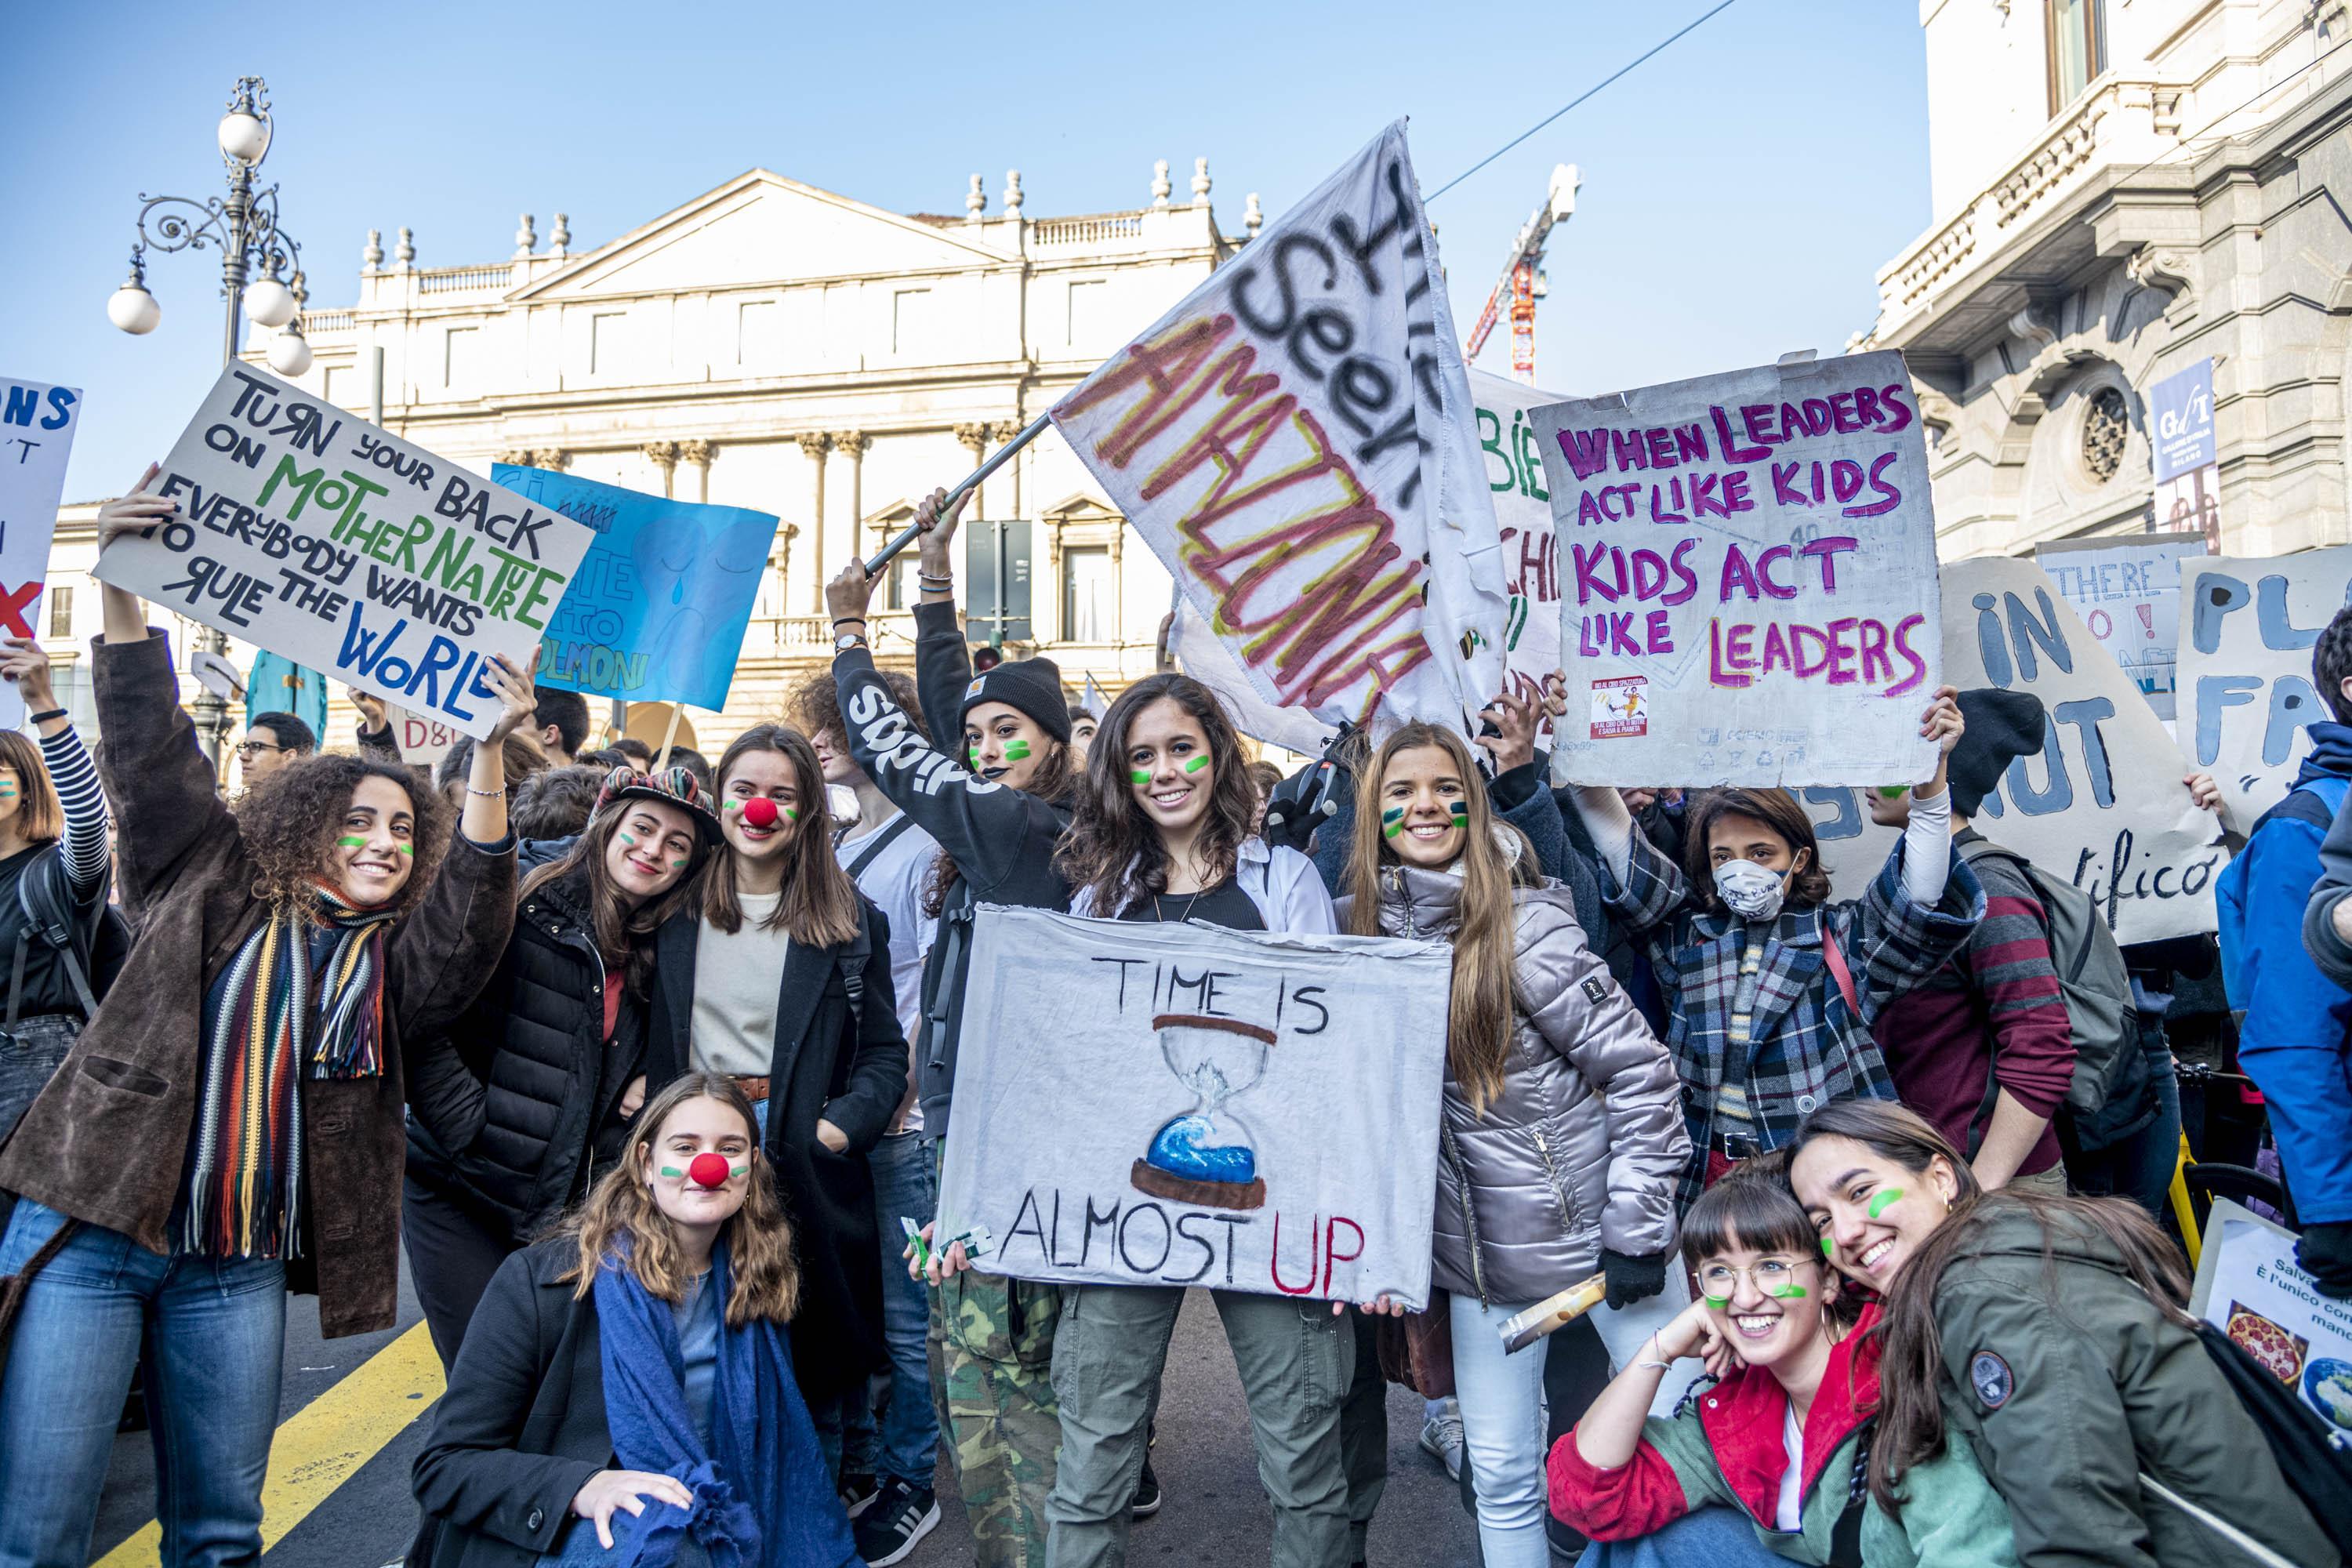 Il corteo degli studenti che partecipano al quarto Sciopero globale per il clima organizzato da Fridays For Future, Milano, 29 novembre 2019.
ANSA/ FOTOGRAMMA/ MARCO PASSARO